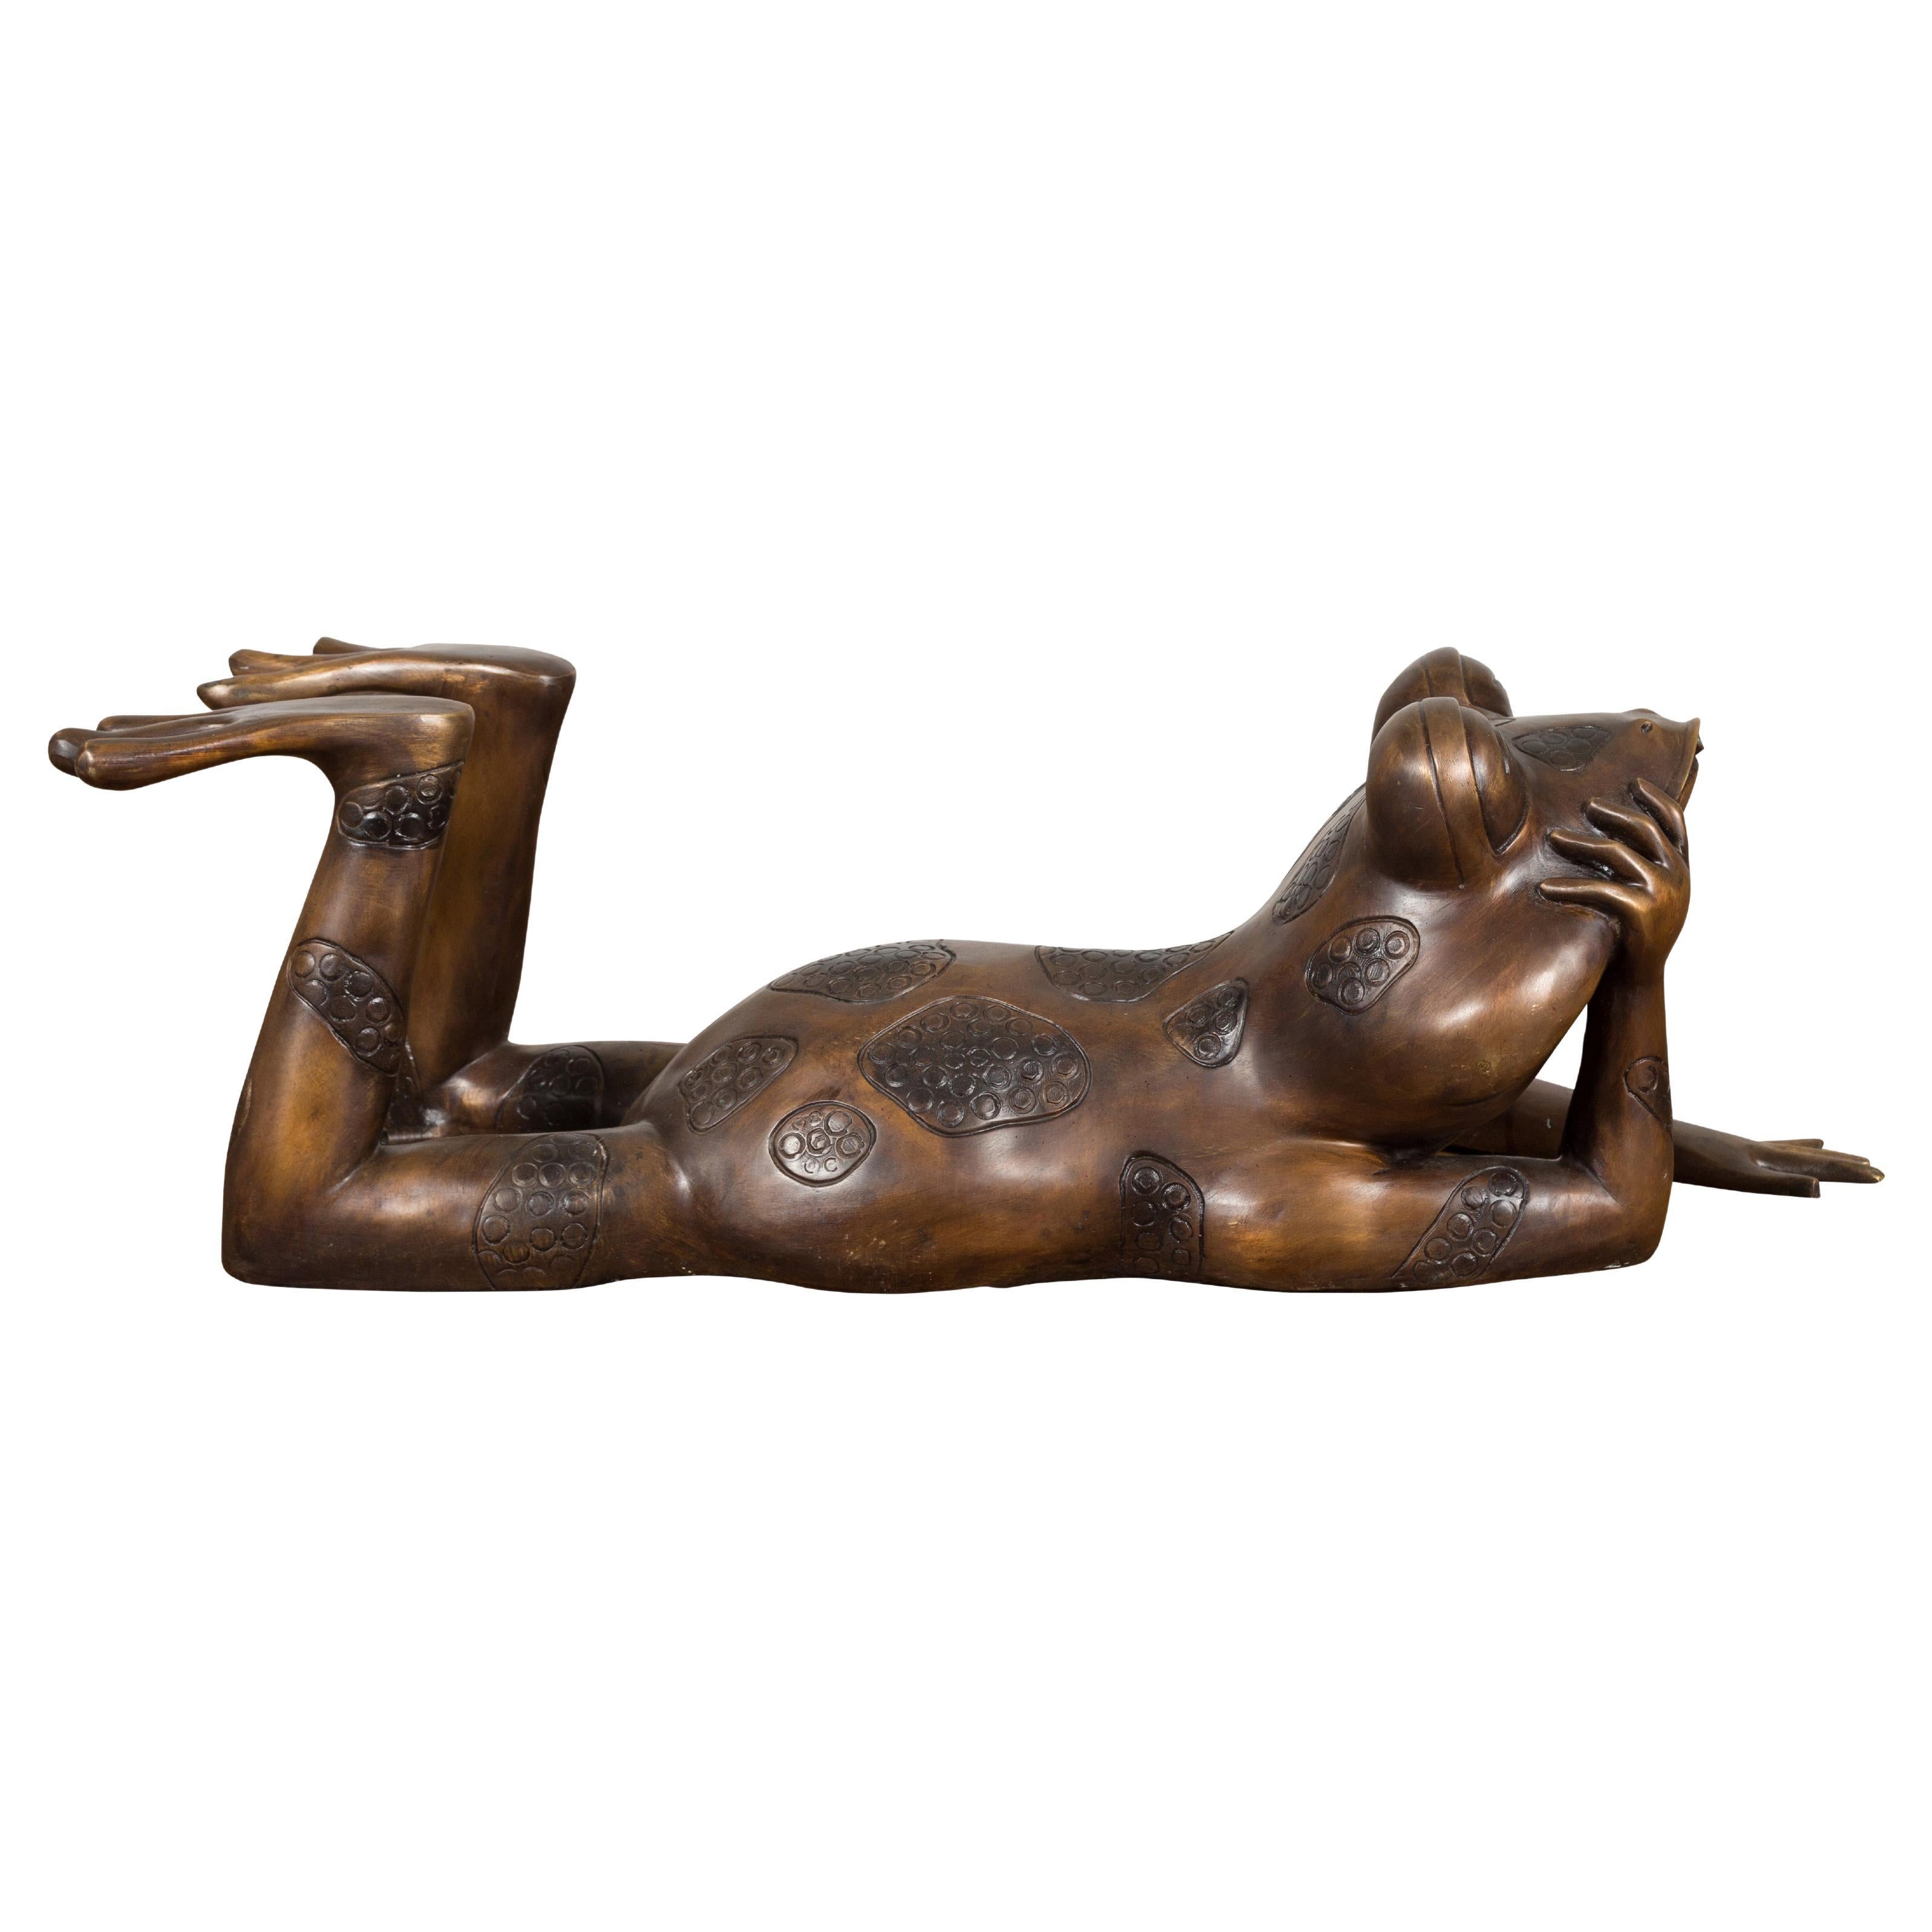 Daydreaming Frosch-Bronze-Skulptur mit goldener Patina, geriffelt als Brunnen